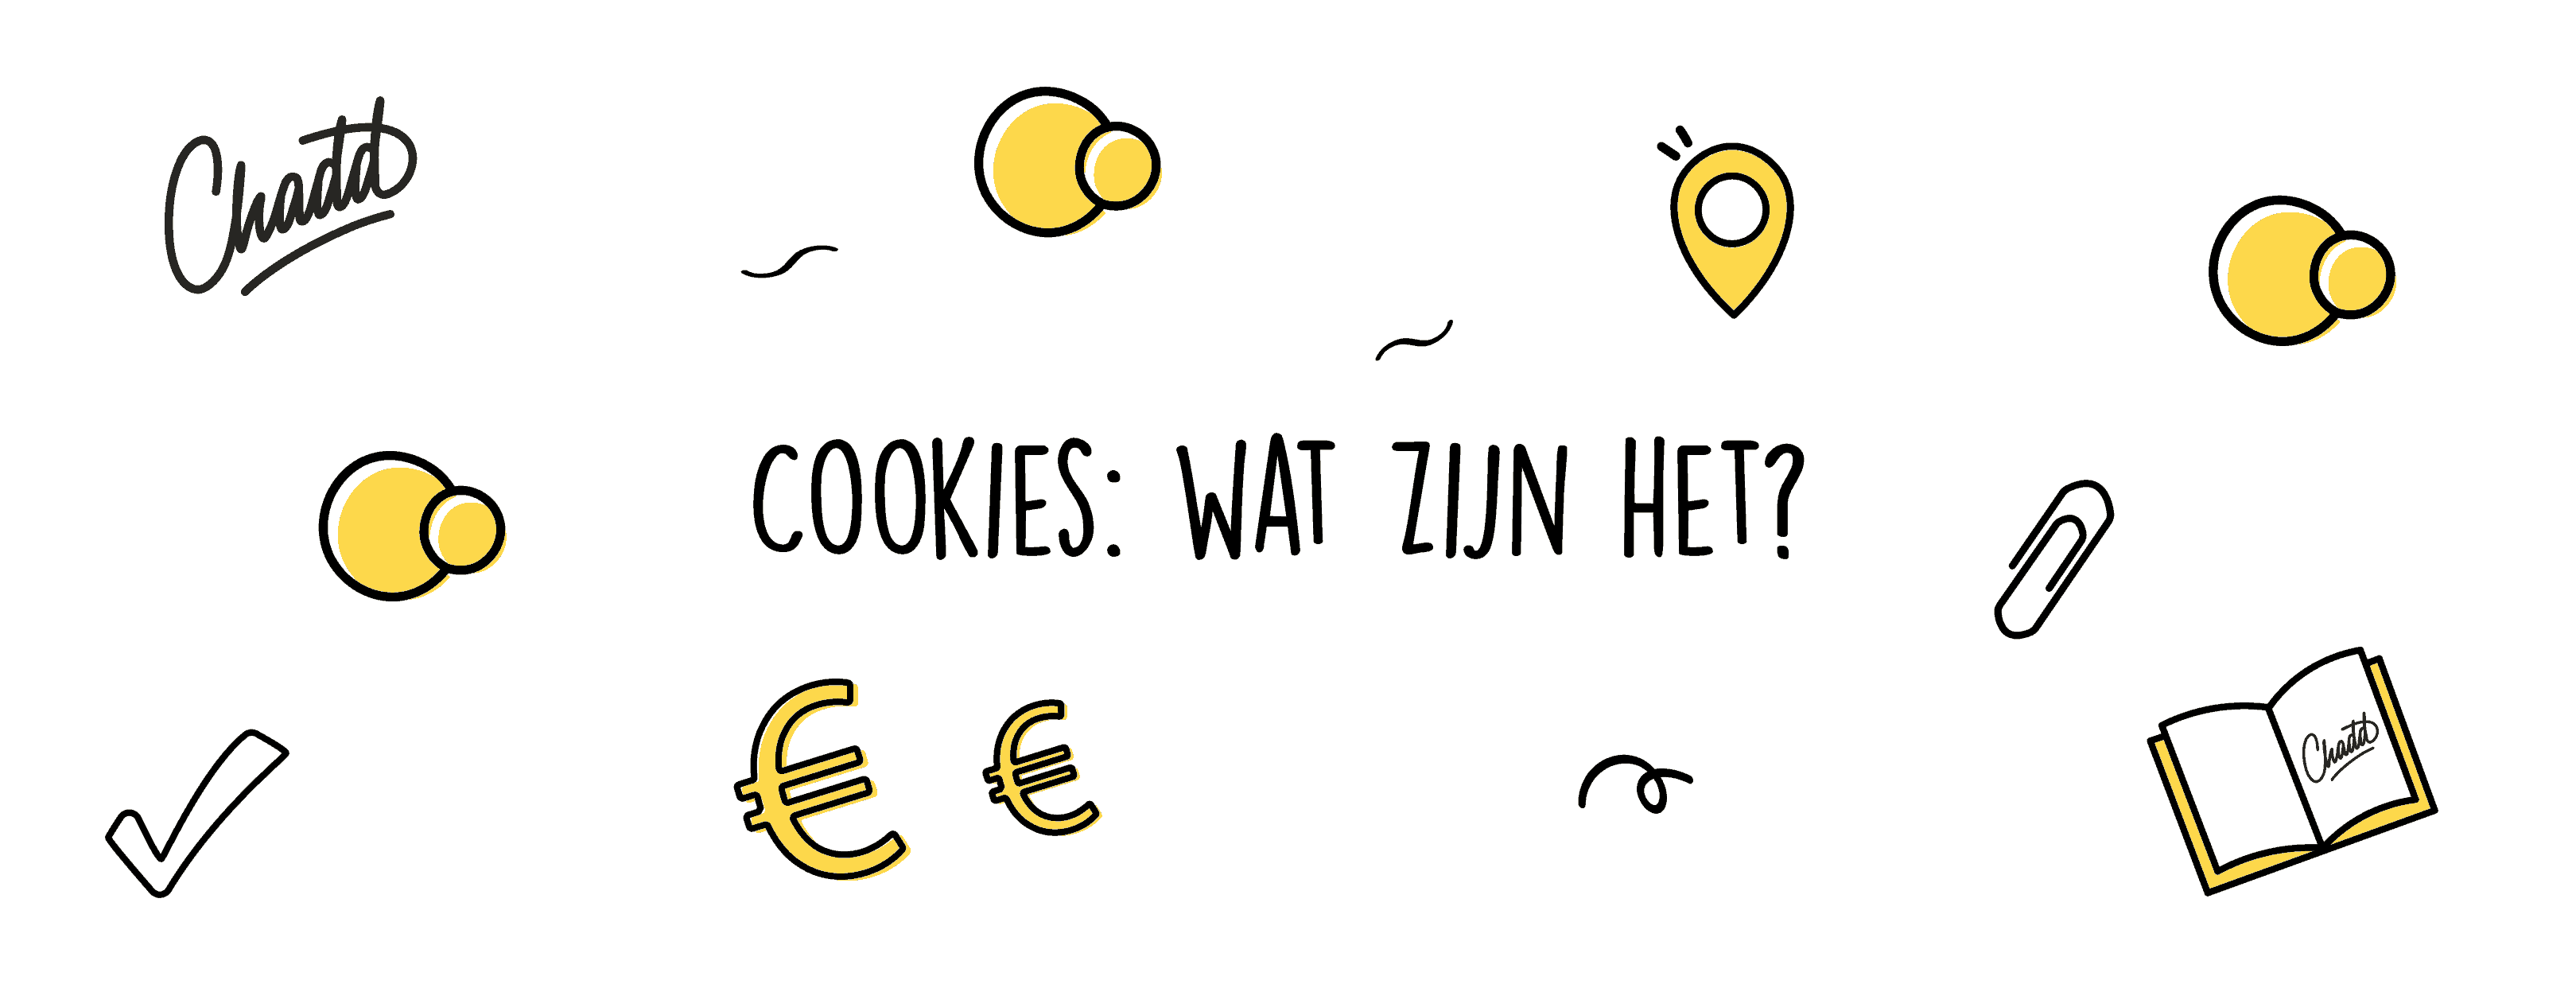 Cookies wat zijn het